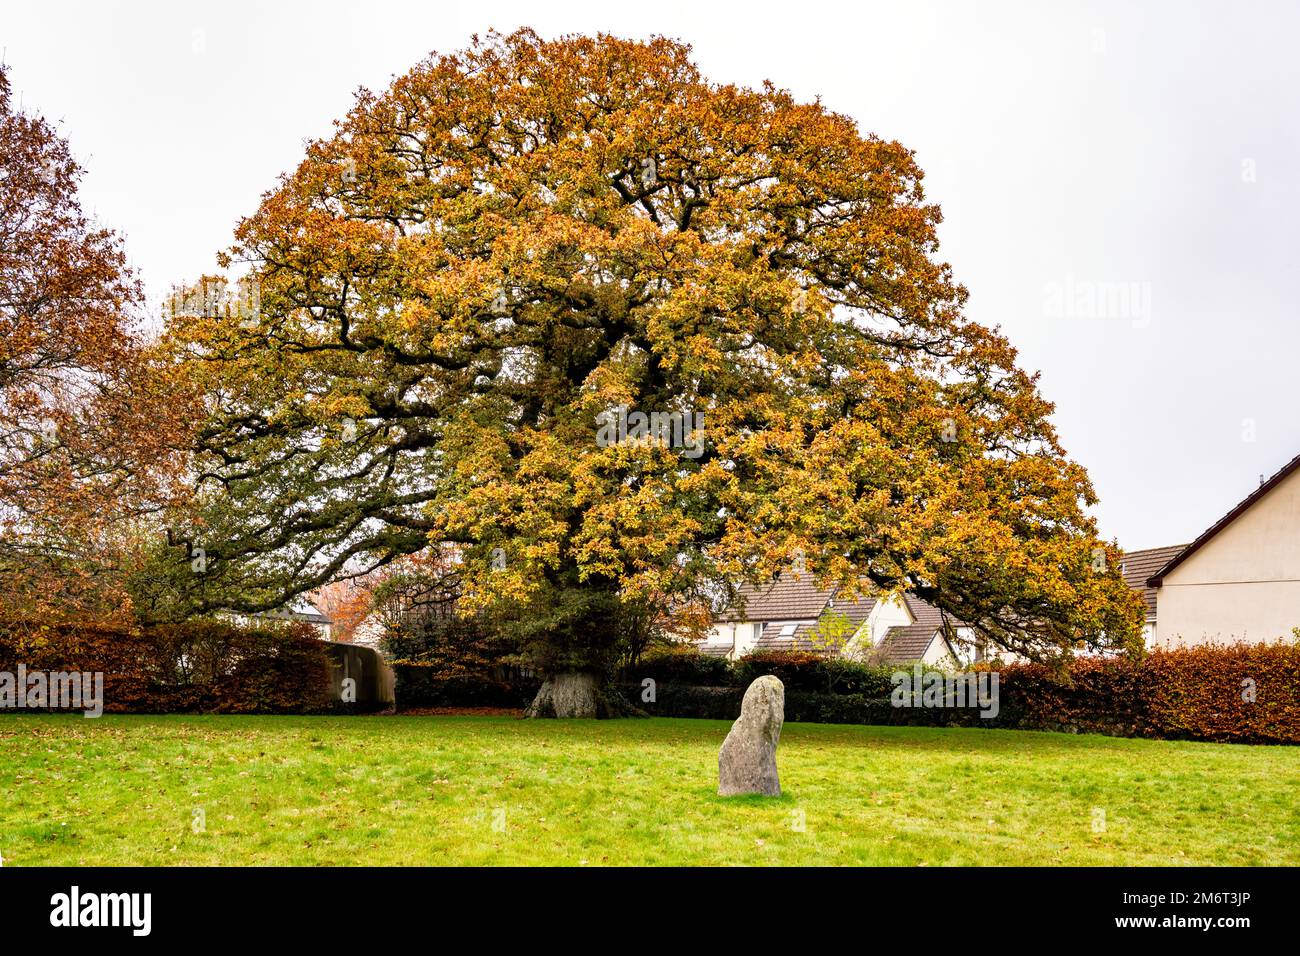 Magnifico albero di quercia con colori autunnali a Oak Tree Park, villaggio di Sticklepath, vicino a Okehampton, Devon, Regno Unito. Foto Stock